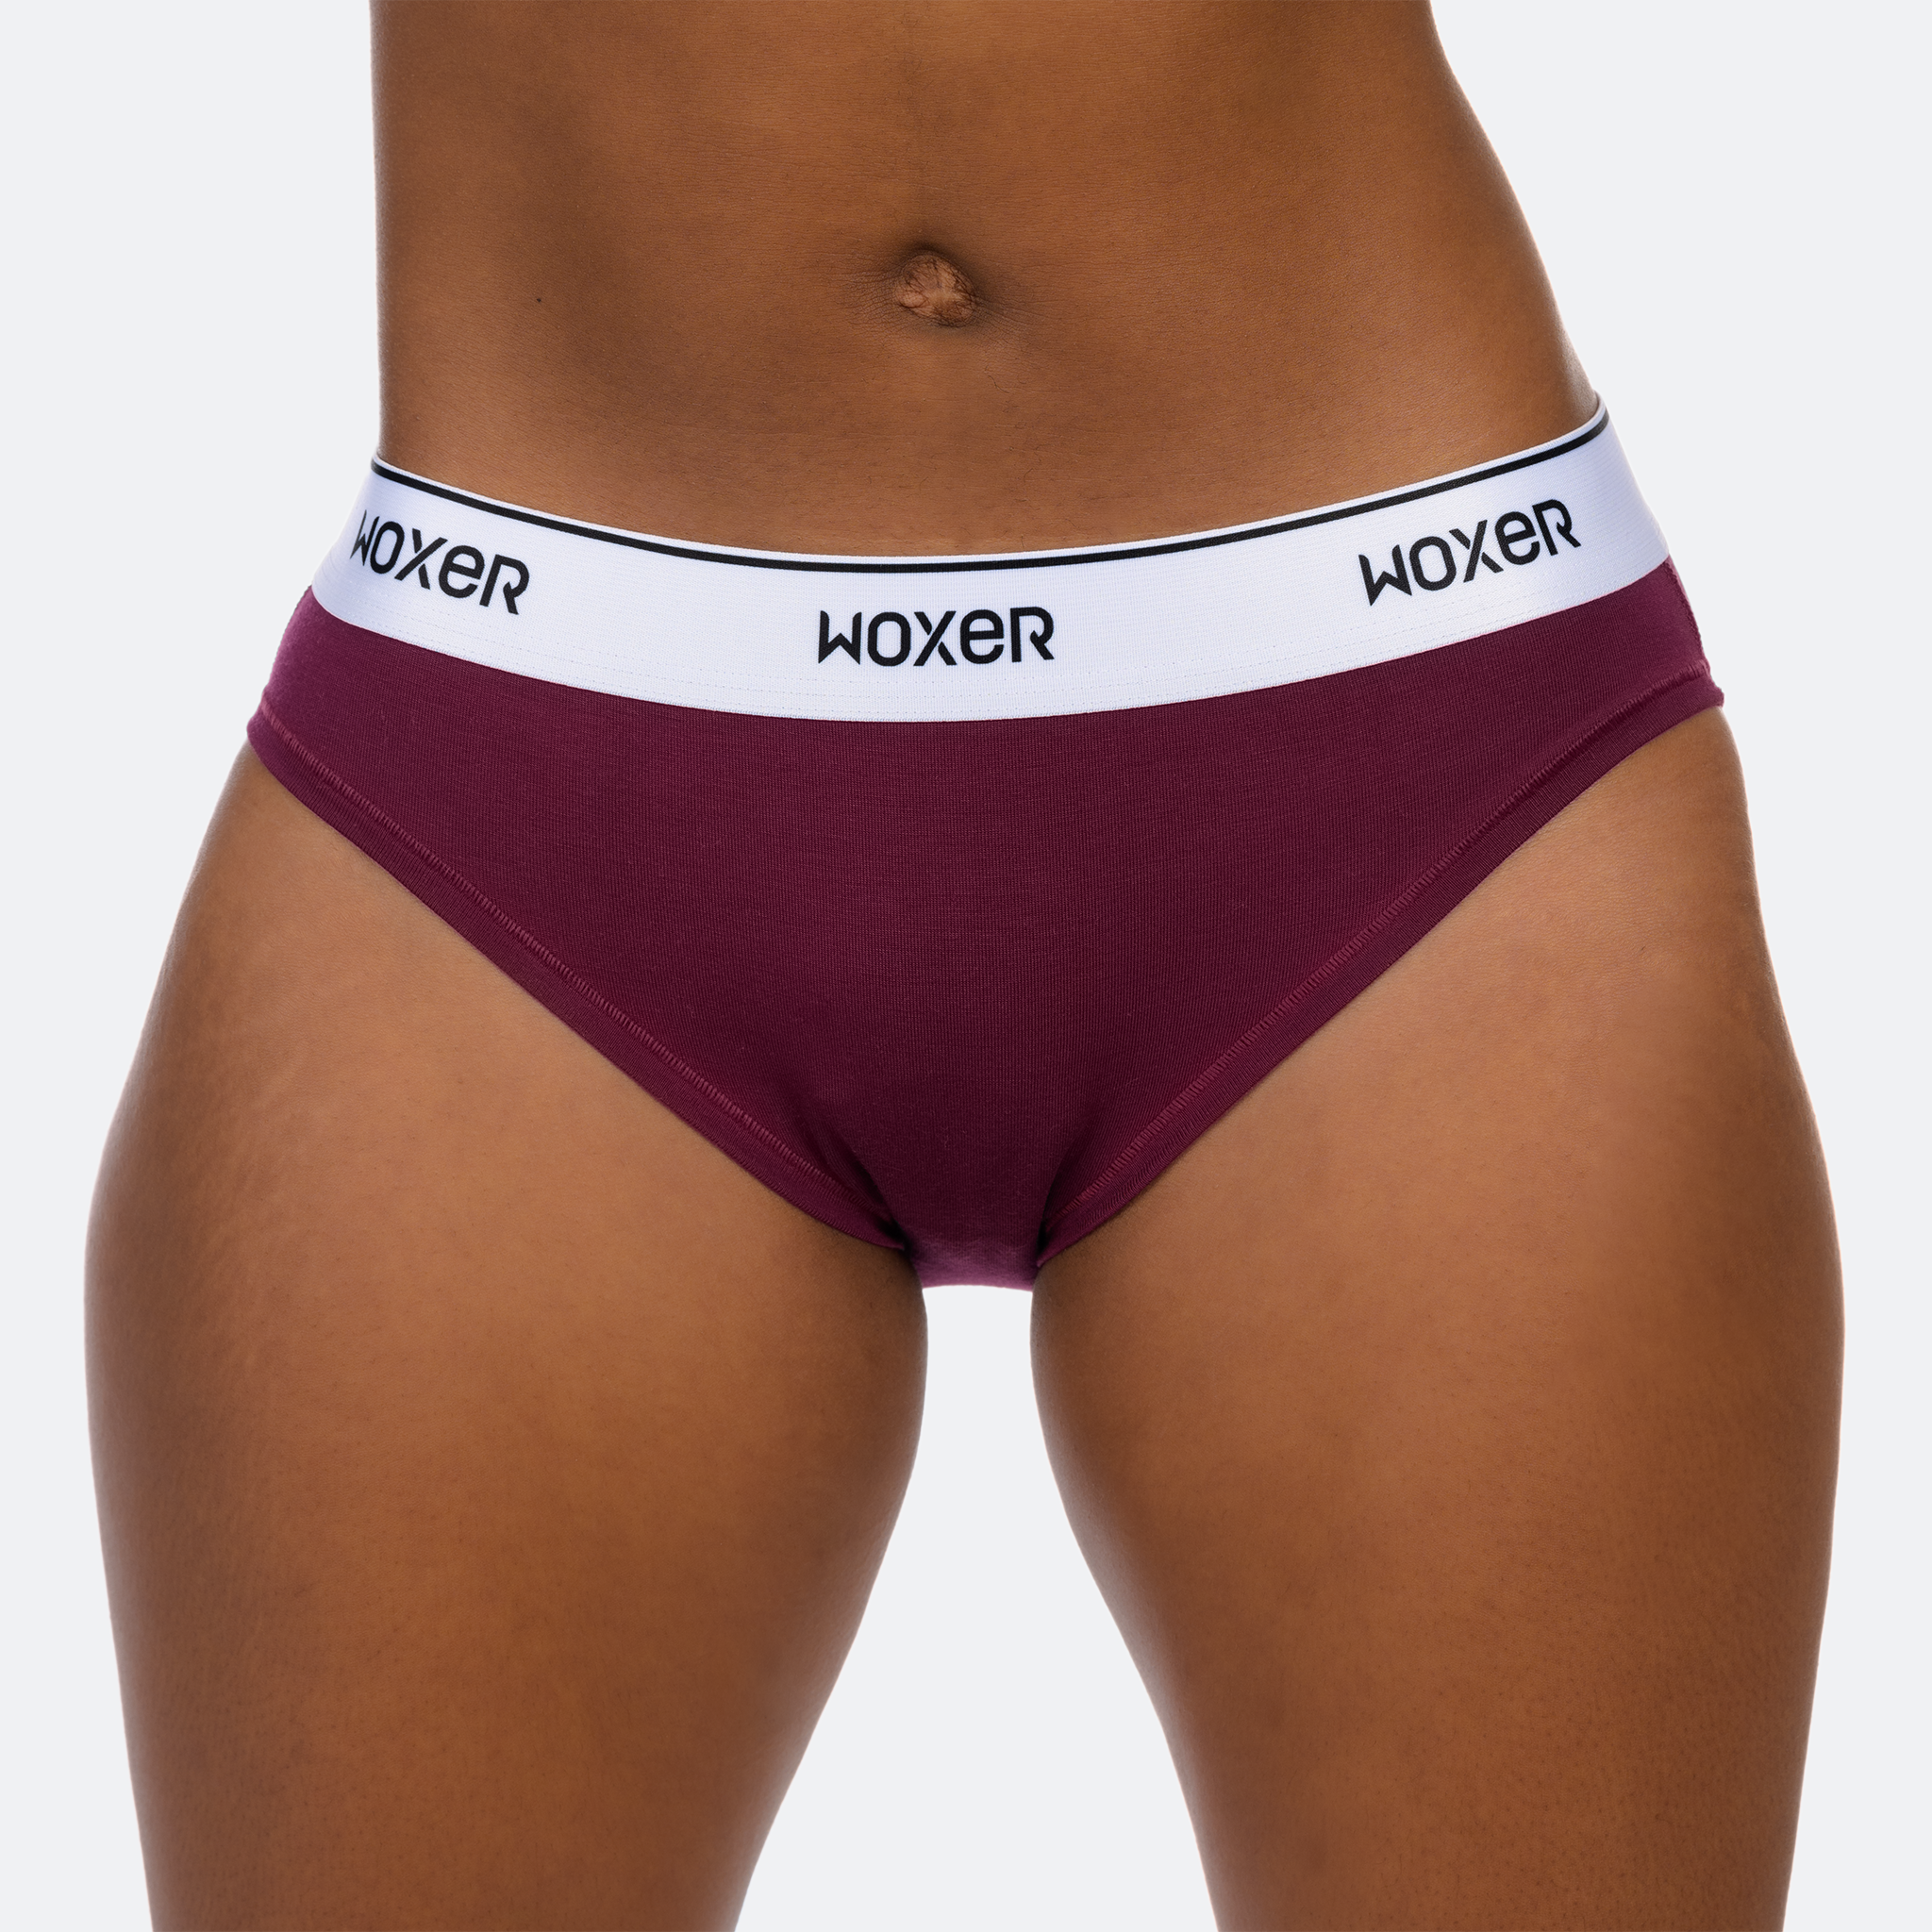 Woolworths Essentials Underwear Women's Full Brief Size 12-14 each